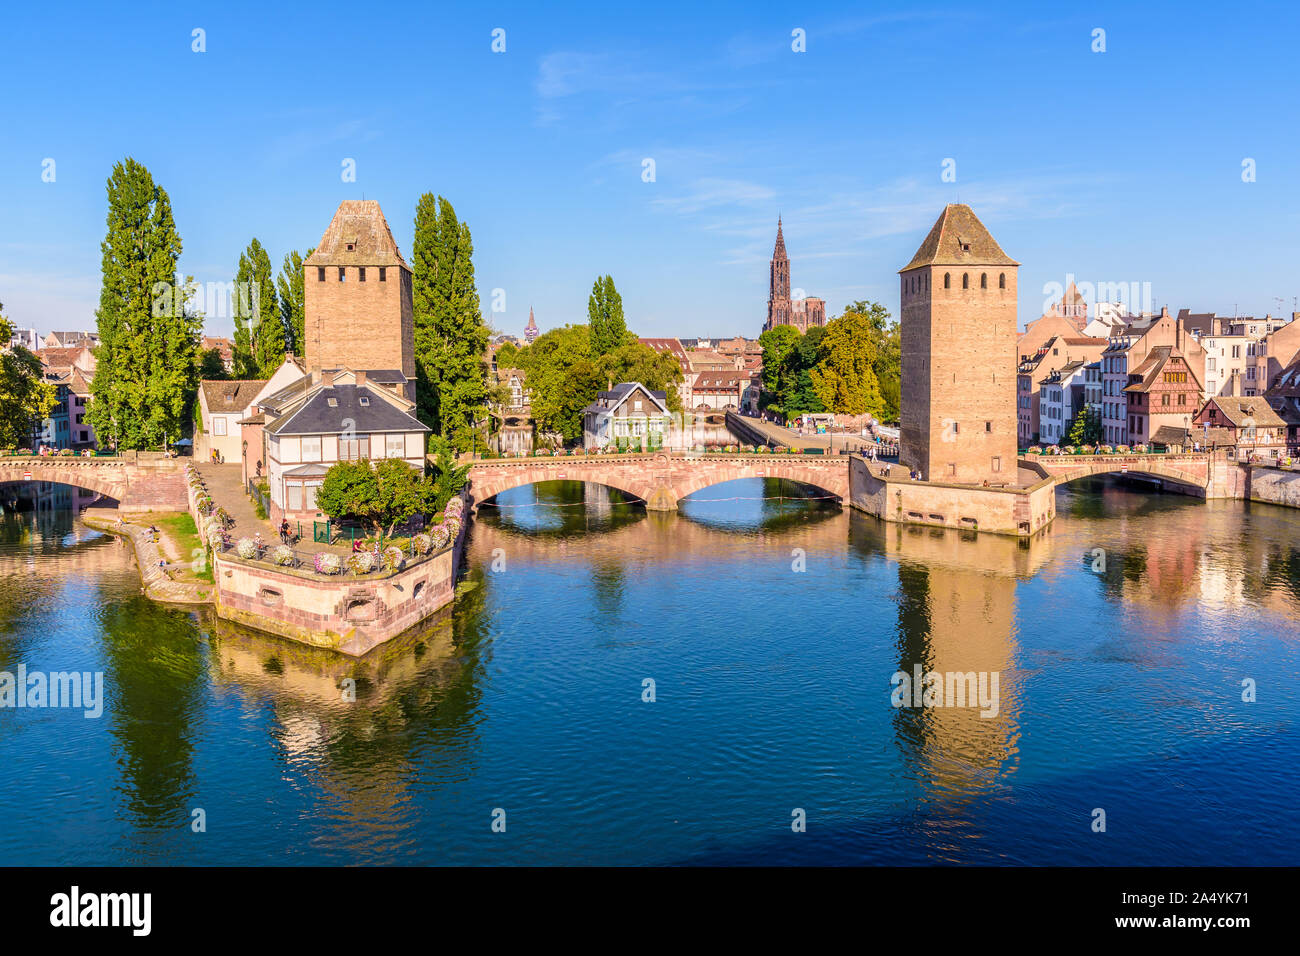 Les Ponts Couverts (ponts couverts) sur l'Ill dans le quartier de la Petite France à Strasbourg, France, et de la cathédrale Notre-Dame au loin. Banque D'Images